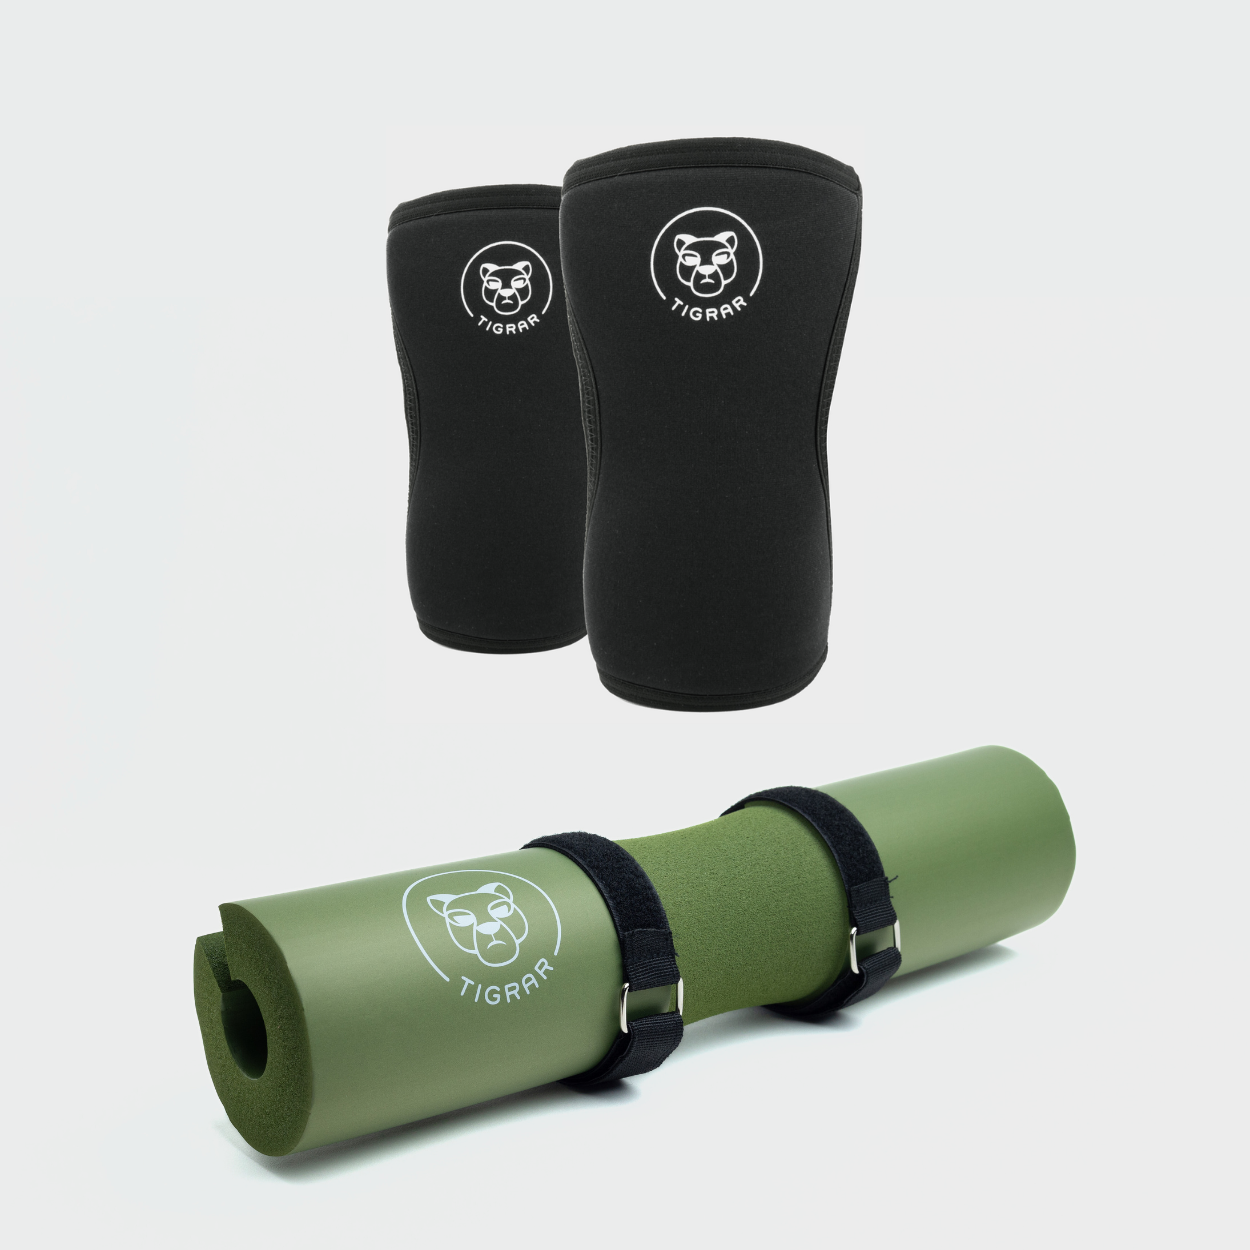 Bereik nieuwe fitnessdoelen met de zwarte knee sleeves van Tigrar en de veelzijdige groene barbell pad, ontworpen voor comfort en duurzaamheid.